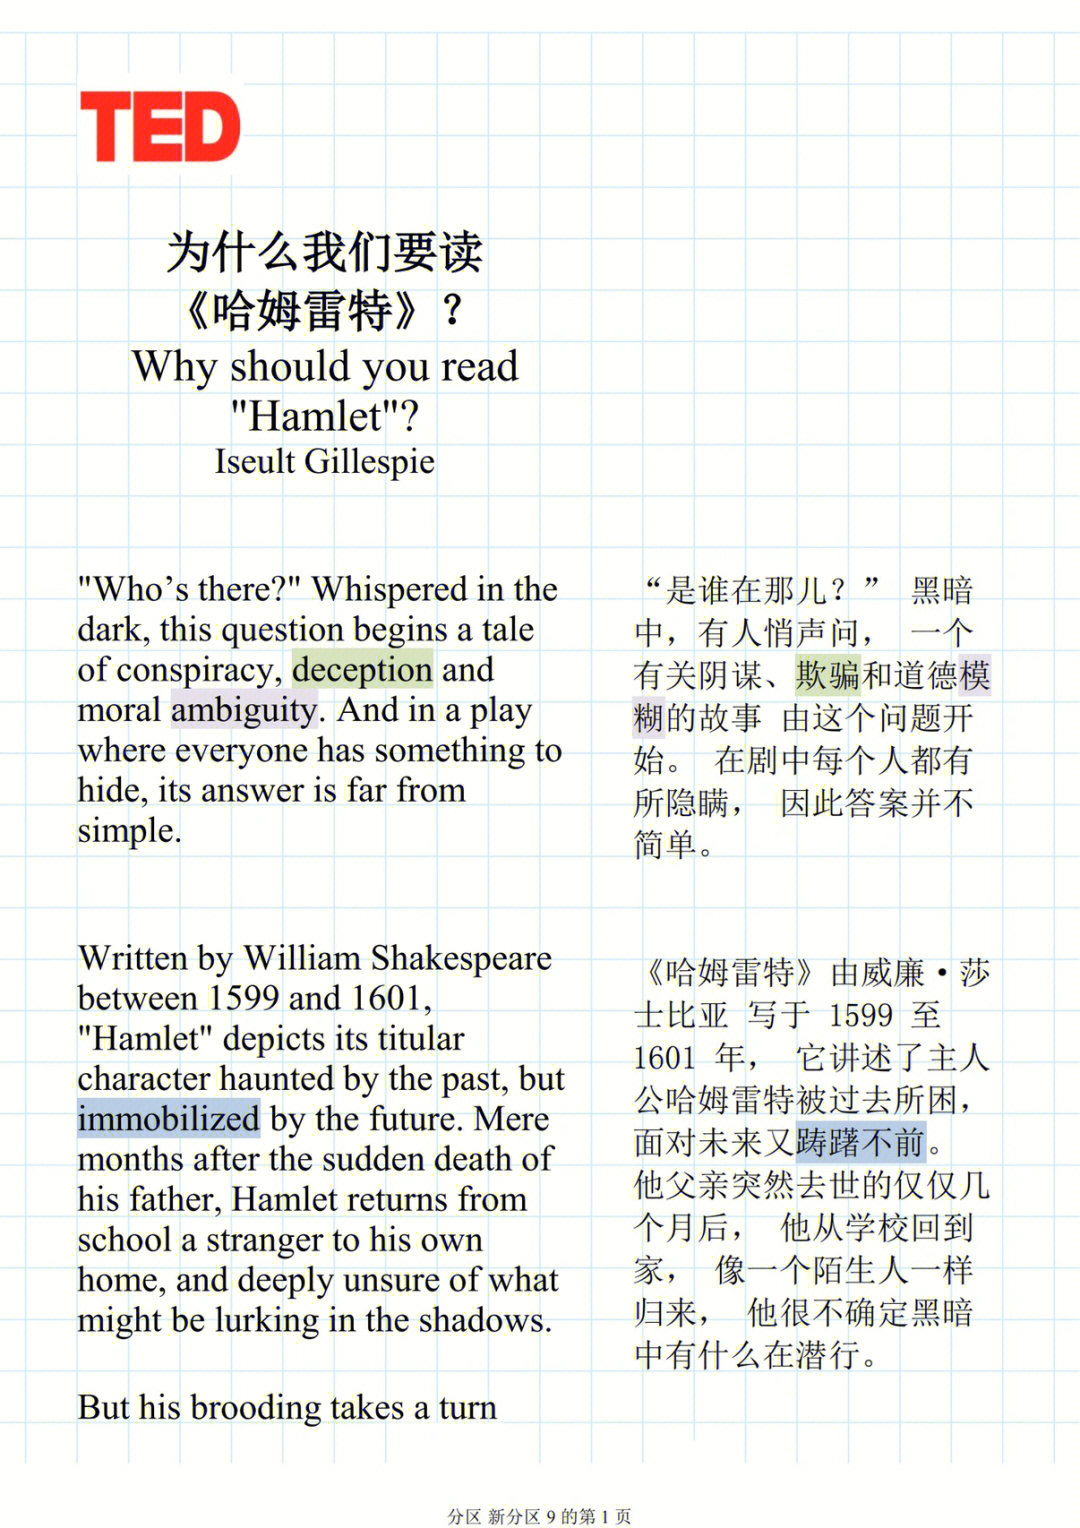 ted阅读笔记为什么我们要读哈姆雷特